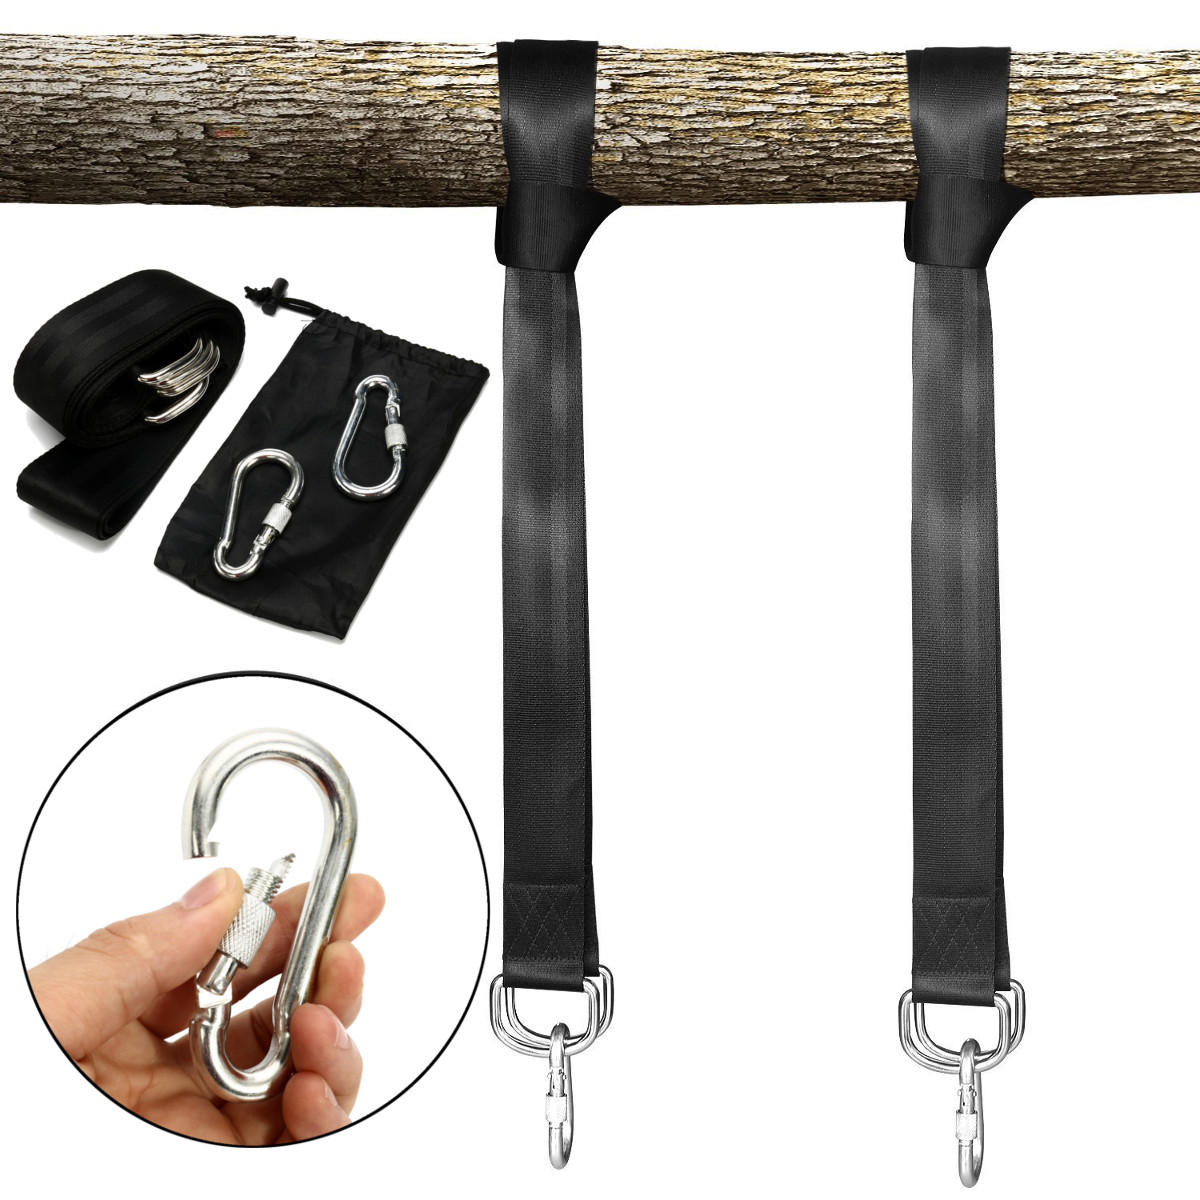 5 stks camping hangmat swing boom sling bandjes set zware outdoor accessoire tuin recreatie